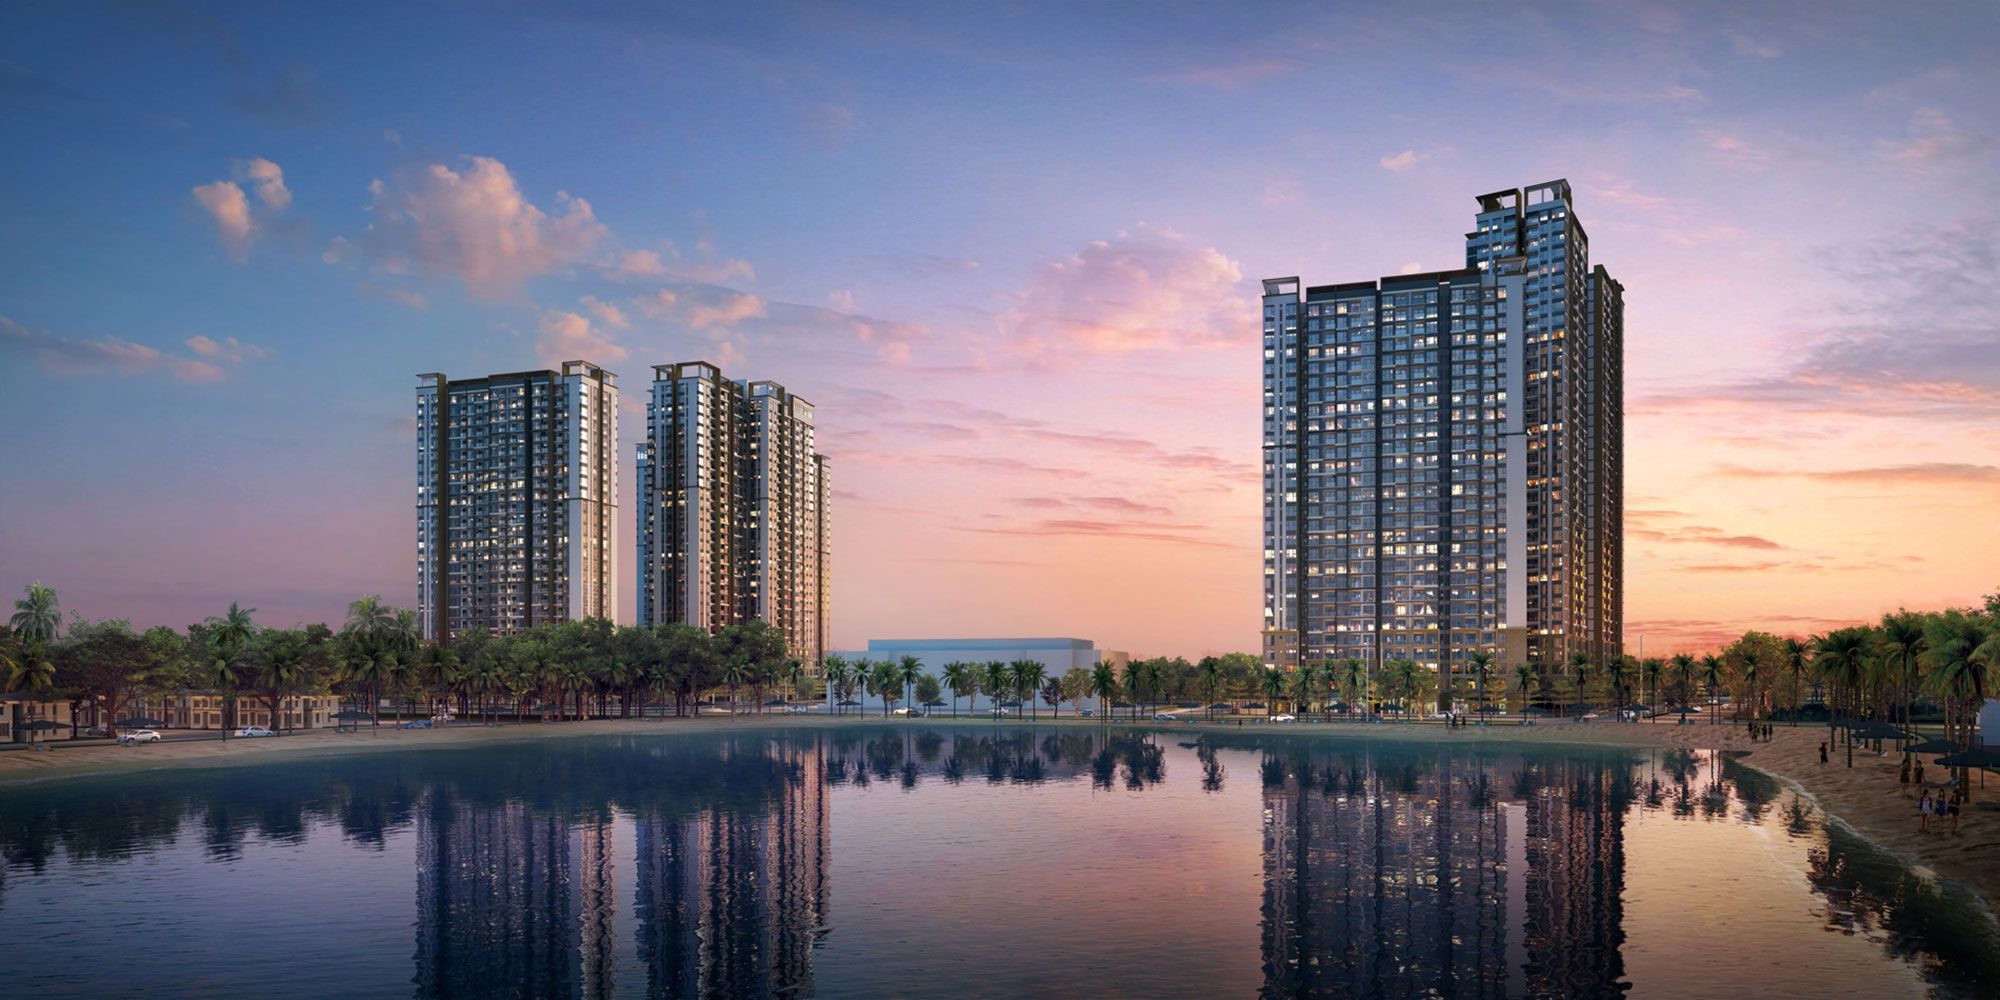 Nhu cầu mua bất động sản ở Hà Nội duy trì ở mức cao 